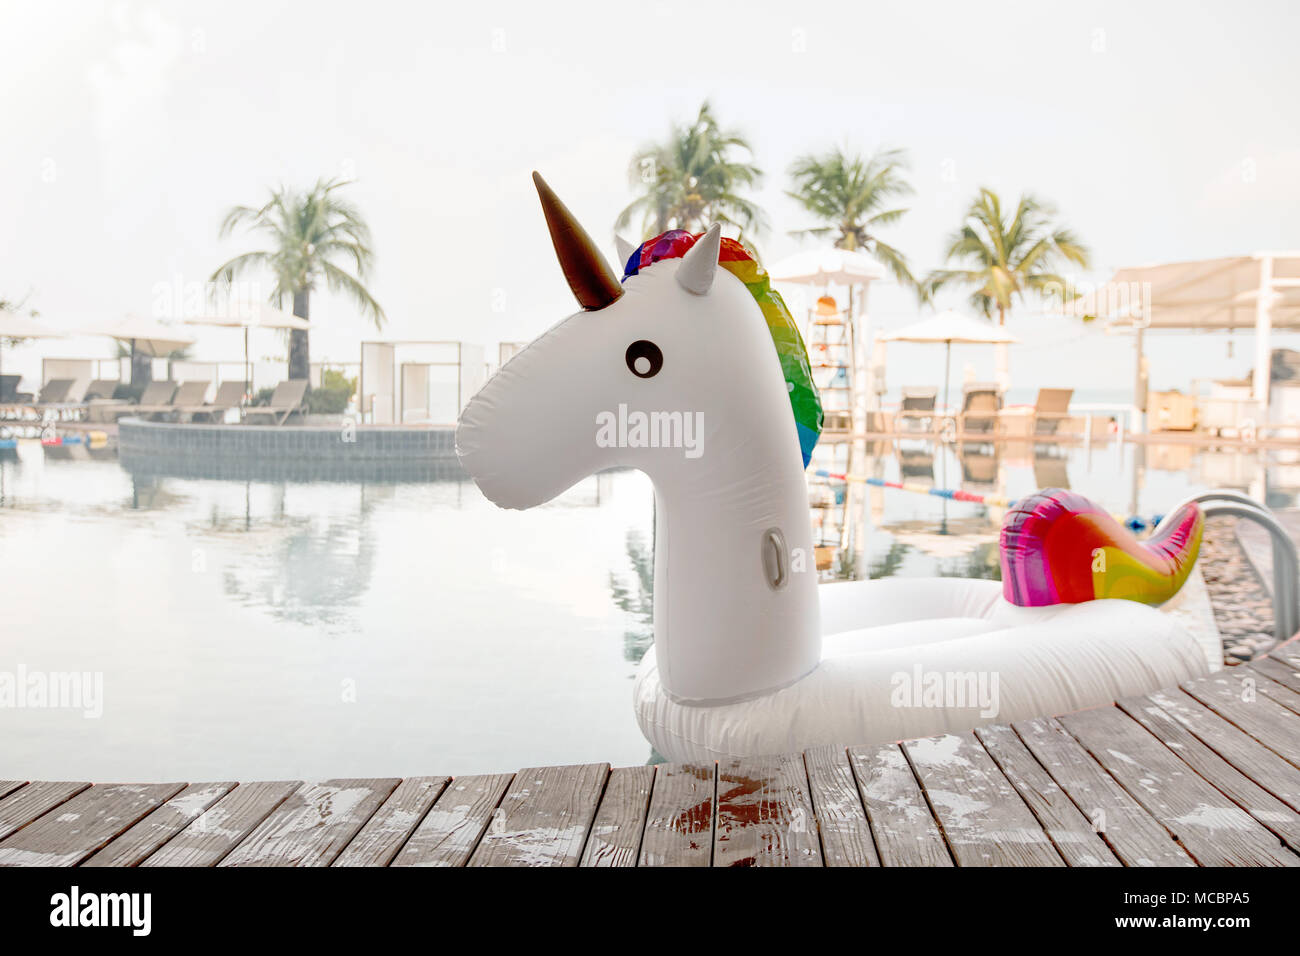 Jouet gonflable coloré piscine unicorn près du bord de piscine sur tropical resort Banque D'Images